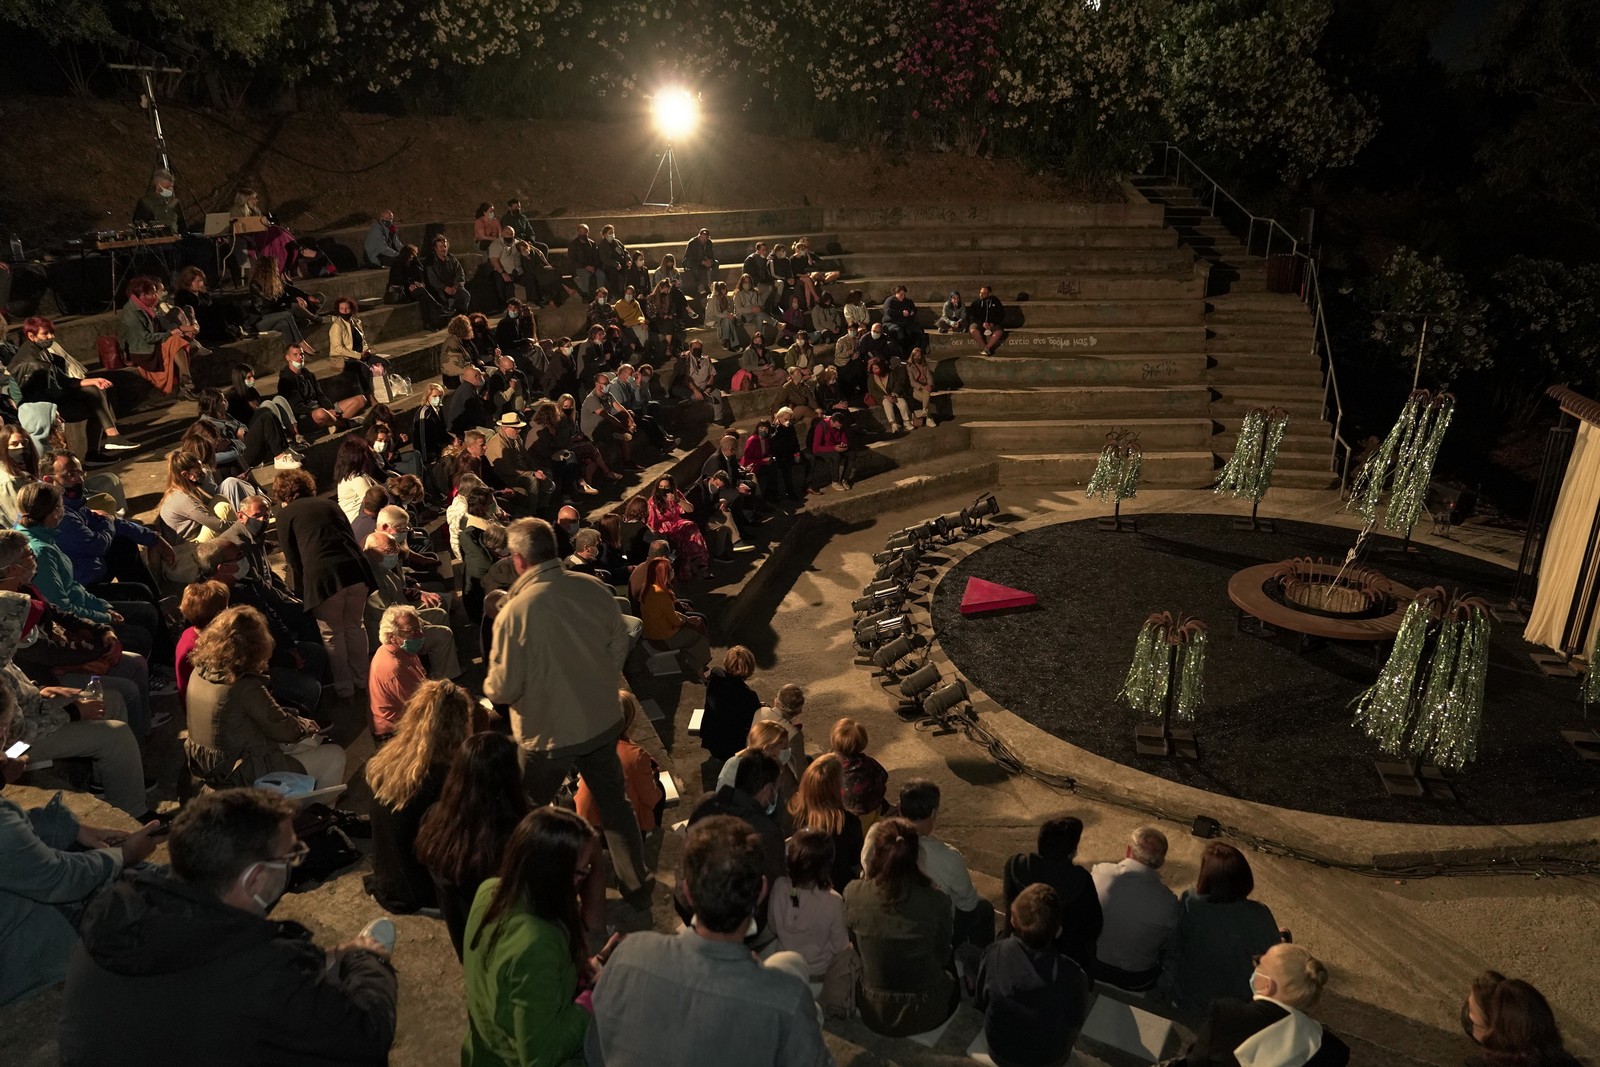 Το Δημοτικό Περιφερειακό Θέατρο Κρήτης, στηρίζεται στους θεατές αλλά και τους στηρίζει